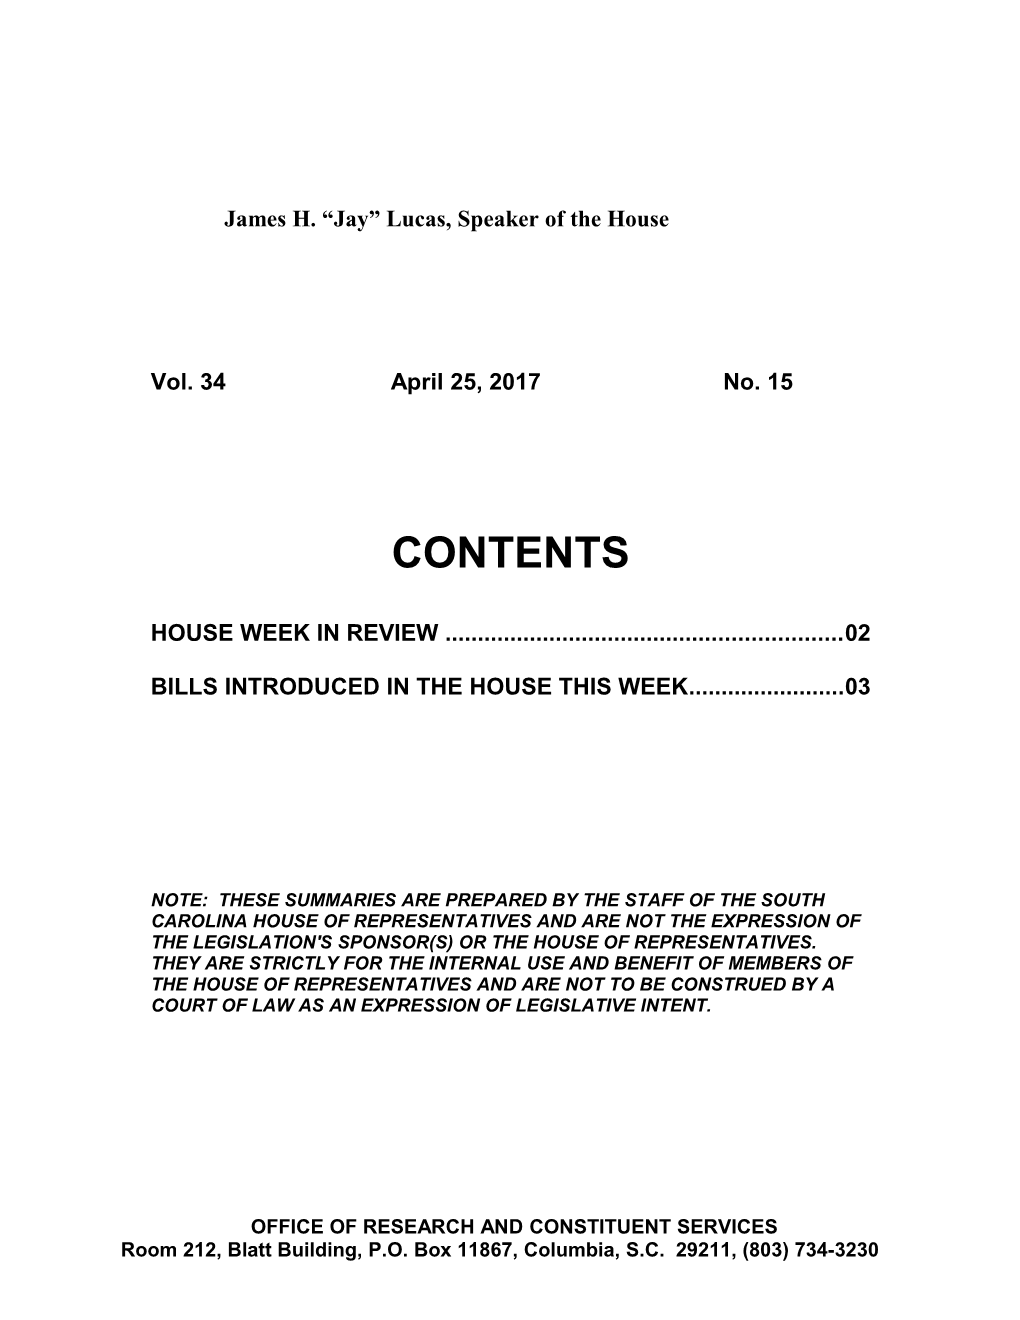 Legislative Update - Vol. 34 No. 15 April 25, 2017 - South Carolina Legislature Online